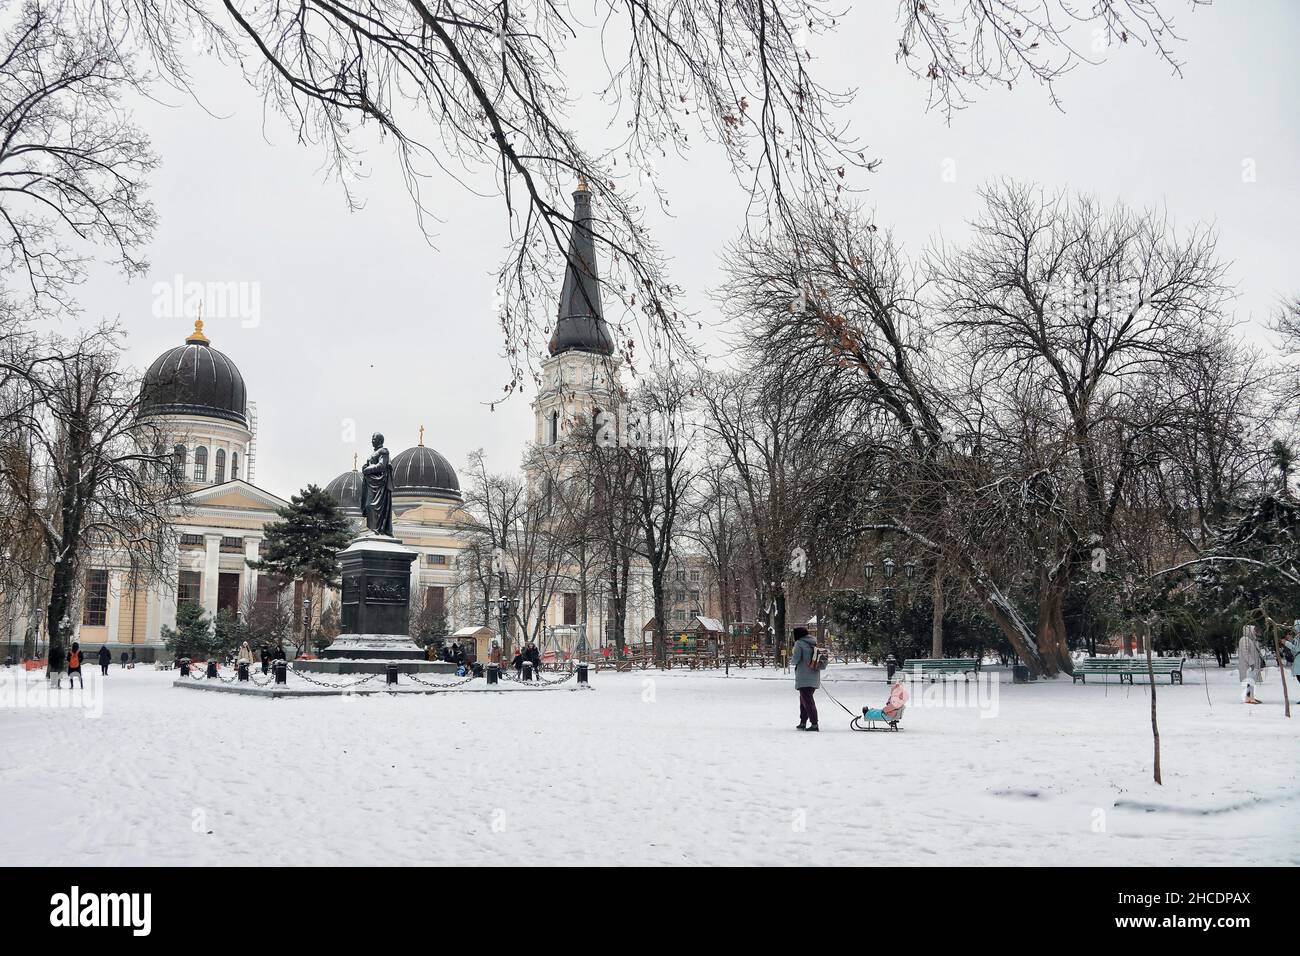 ODESA, UKRAINE - 27. DEZEMBER 2021 - die Statue von Graf Worontsov befindet sich auf dem Soborna-Platz vor der Verklärung-Kathedrale im Winter, Odesa, so Stockfoto